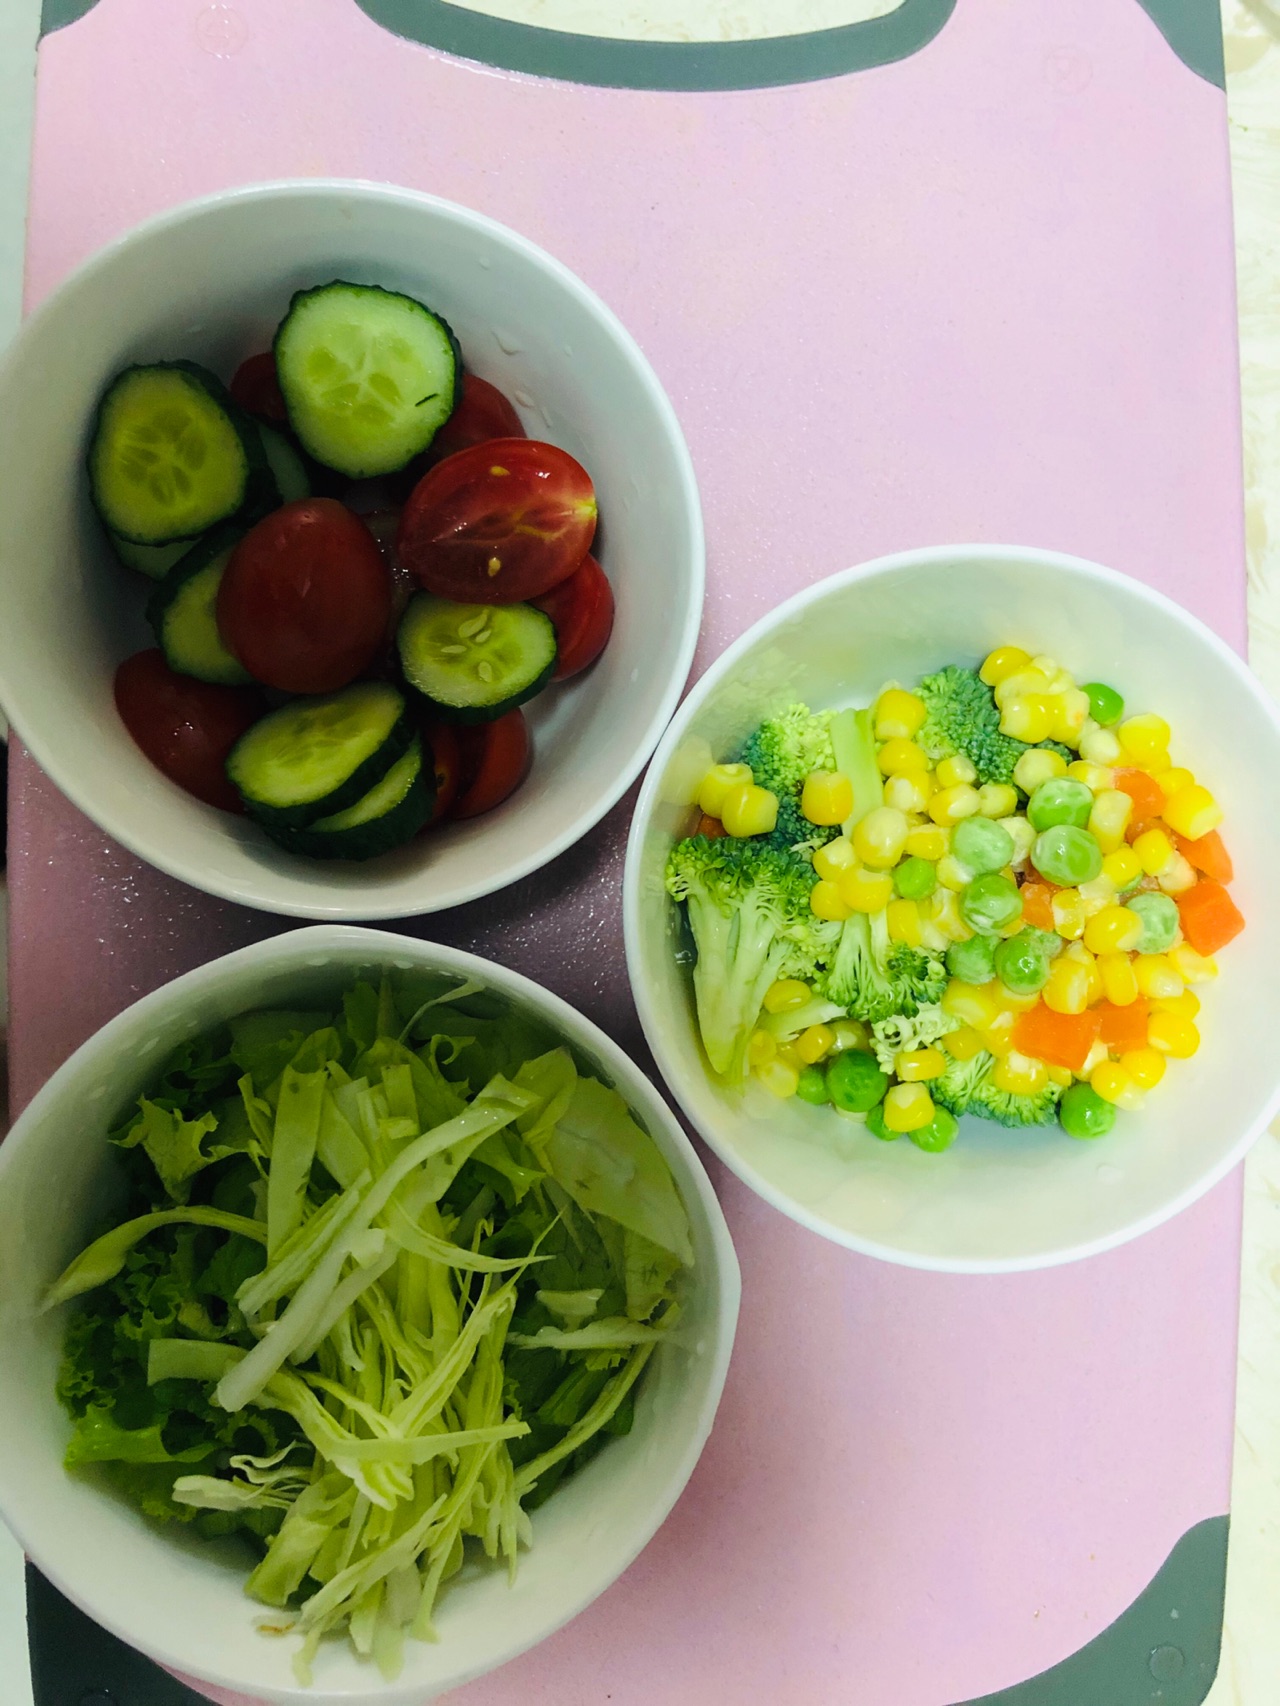 蔬菜沙拉怎么做_蔬菜沙拉的做法_豆果美食